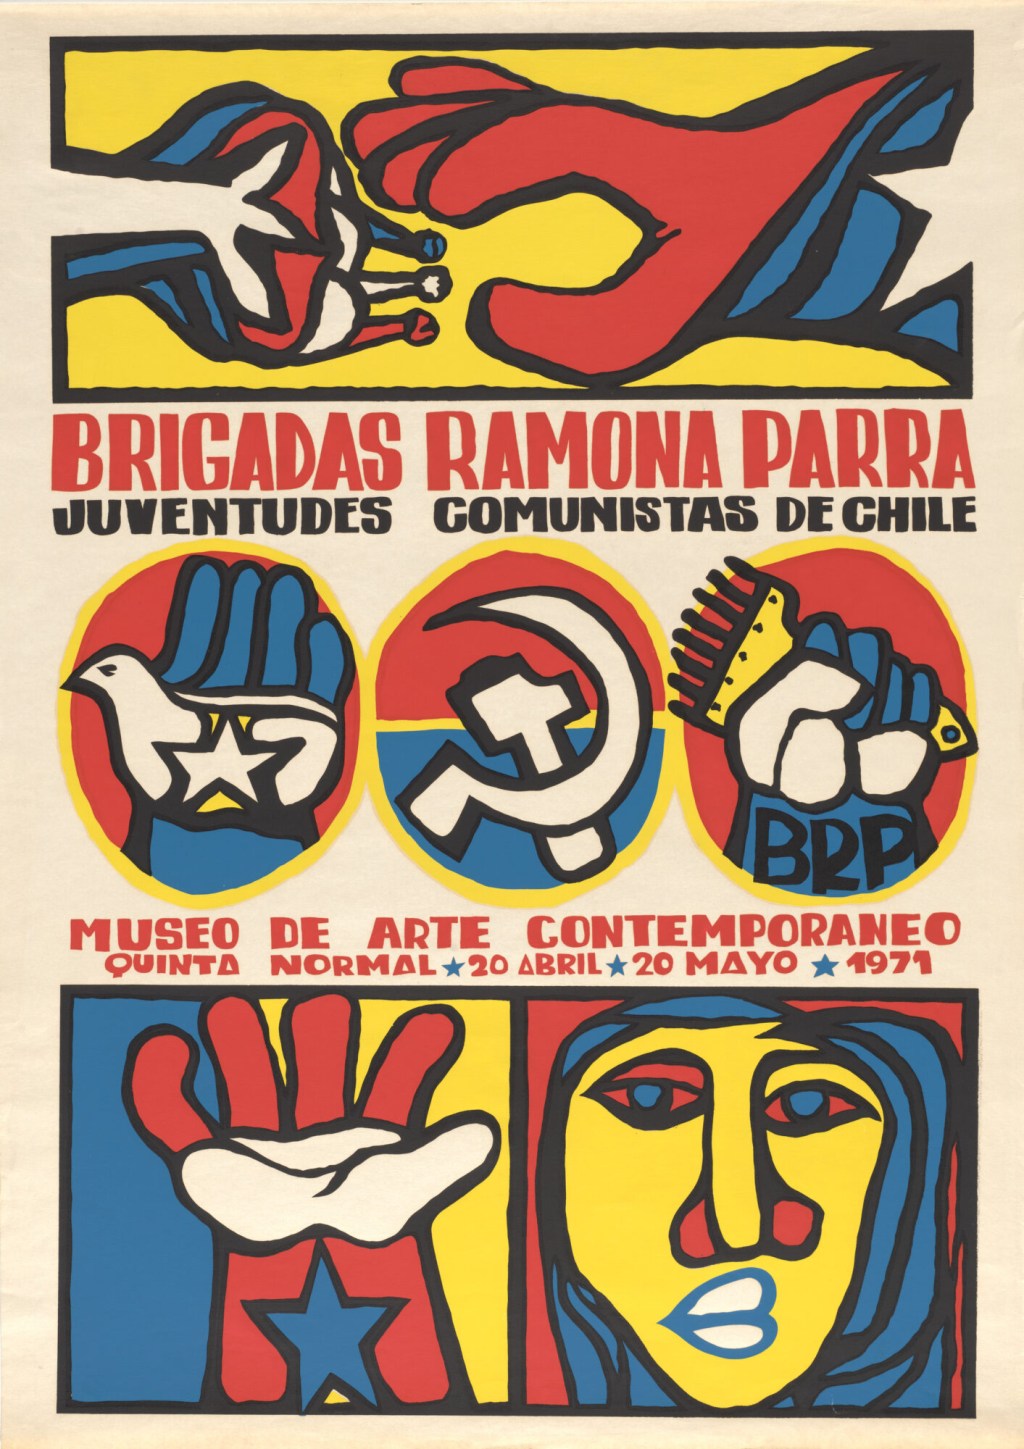 Brigadas Ramona Parra, Juventudes Comunistas de Chile